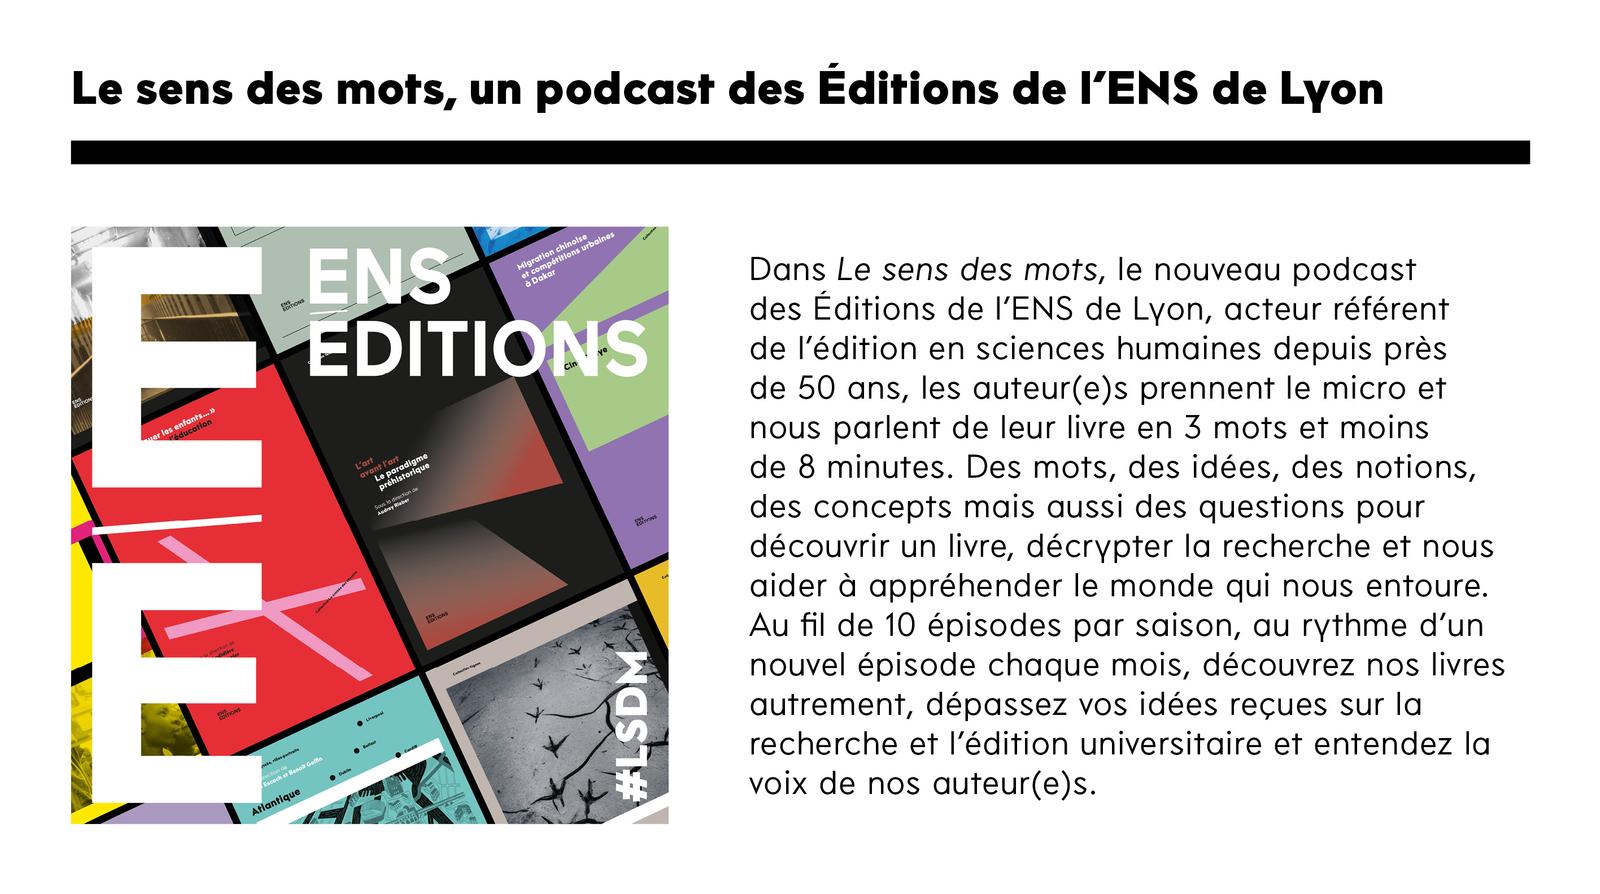 Le sens des mots, un podcast des Éditions de l'ENS de Lyon